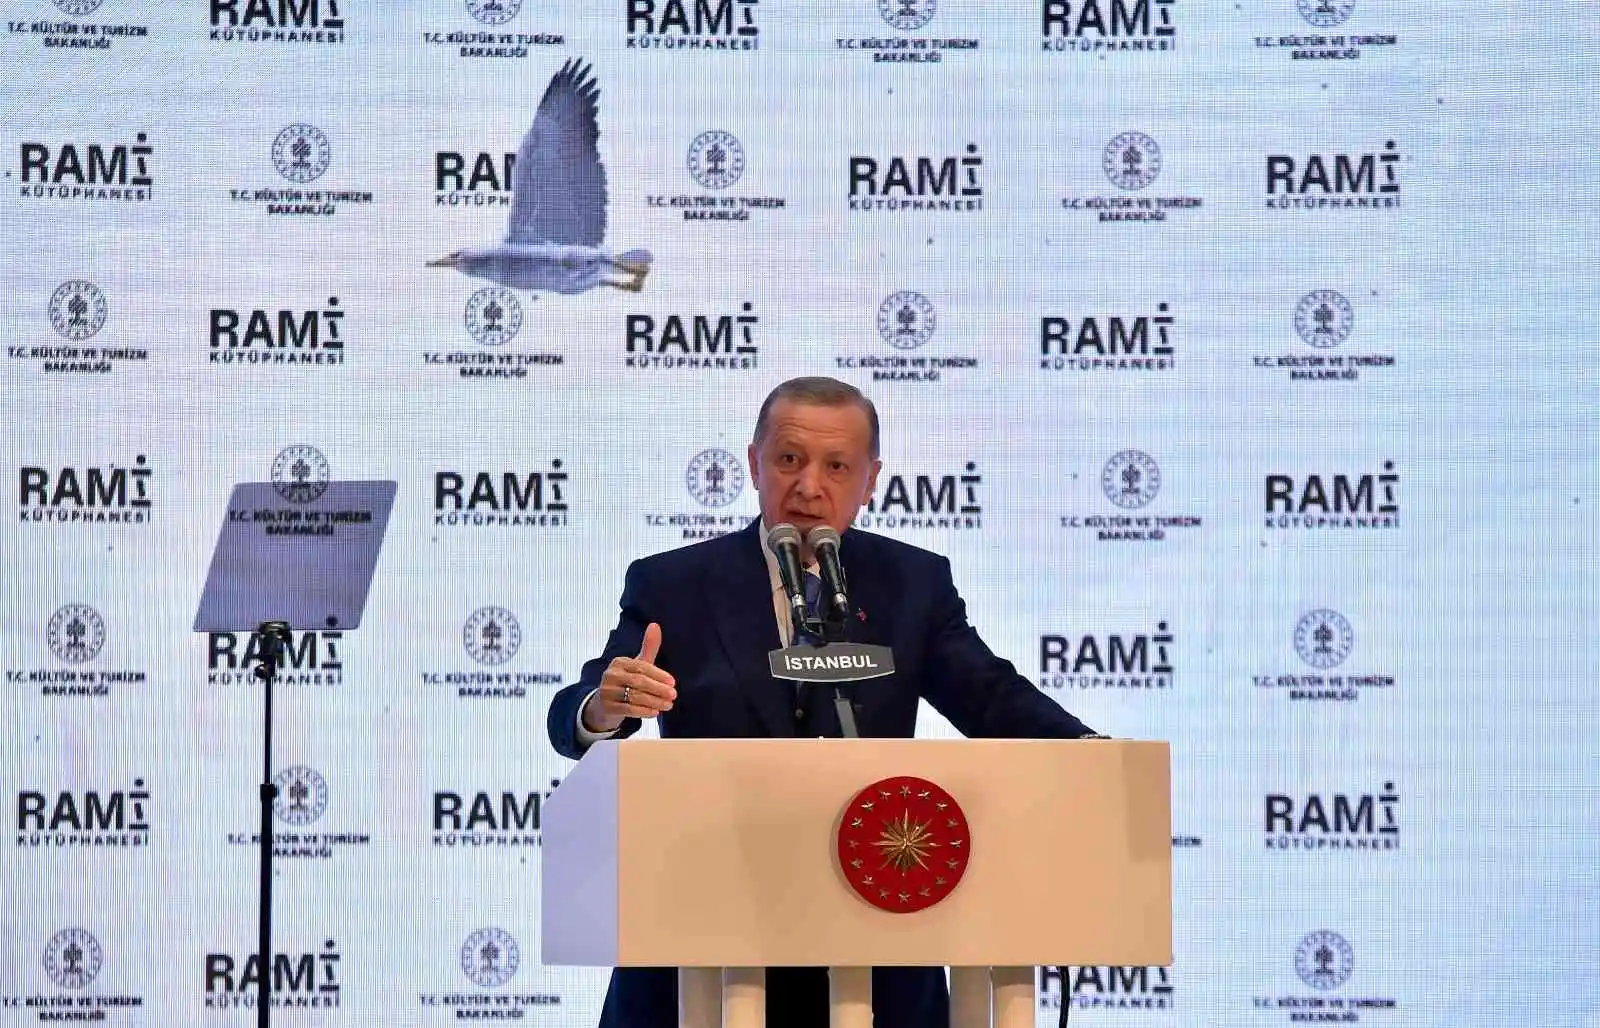 Cumhurbaşkanı Erdoğan: "Rami'yi sadece kütüphane değil pek çok faaliyetin yapılabileceği bir kültür merkezi olarak planladık"
